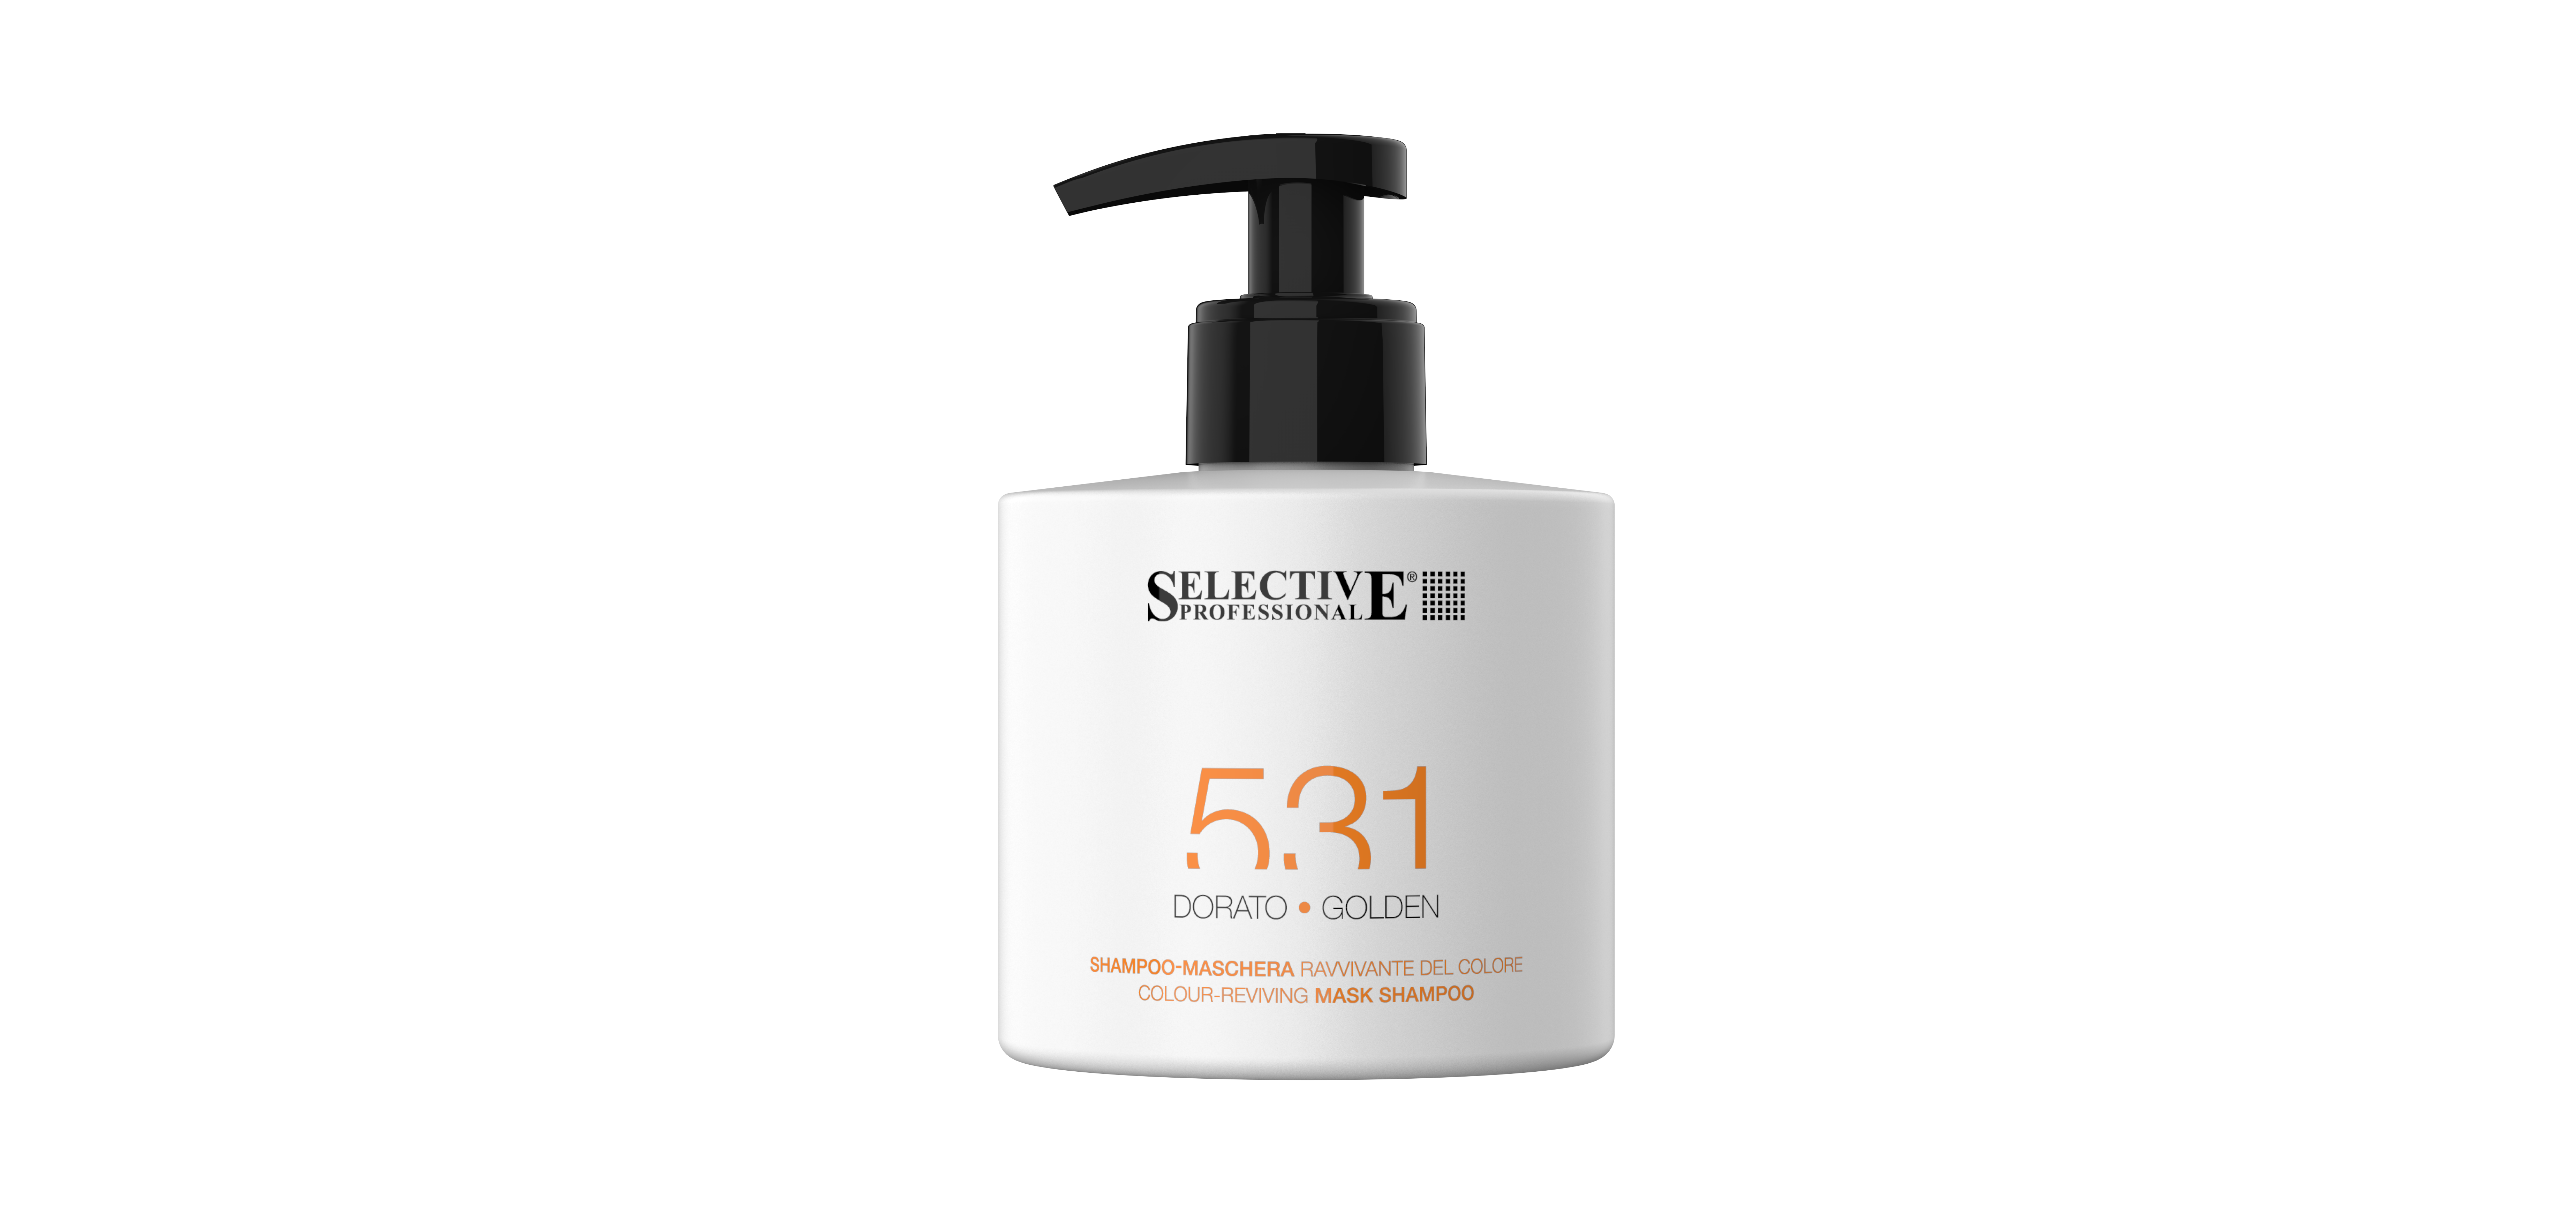 Шампуни для волос:  SELECTIVE PROFESSIONAL -  Шампунь - маска  531 для возобновления цвета волос, Золотистый  (275 мл)